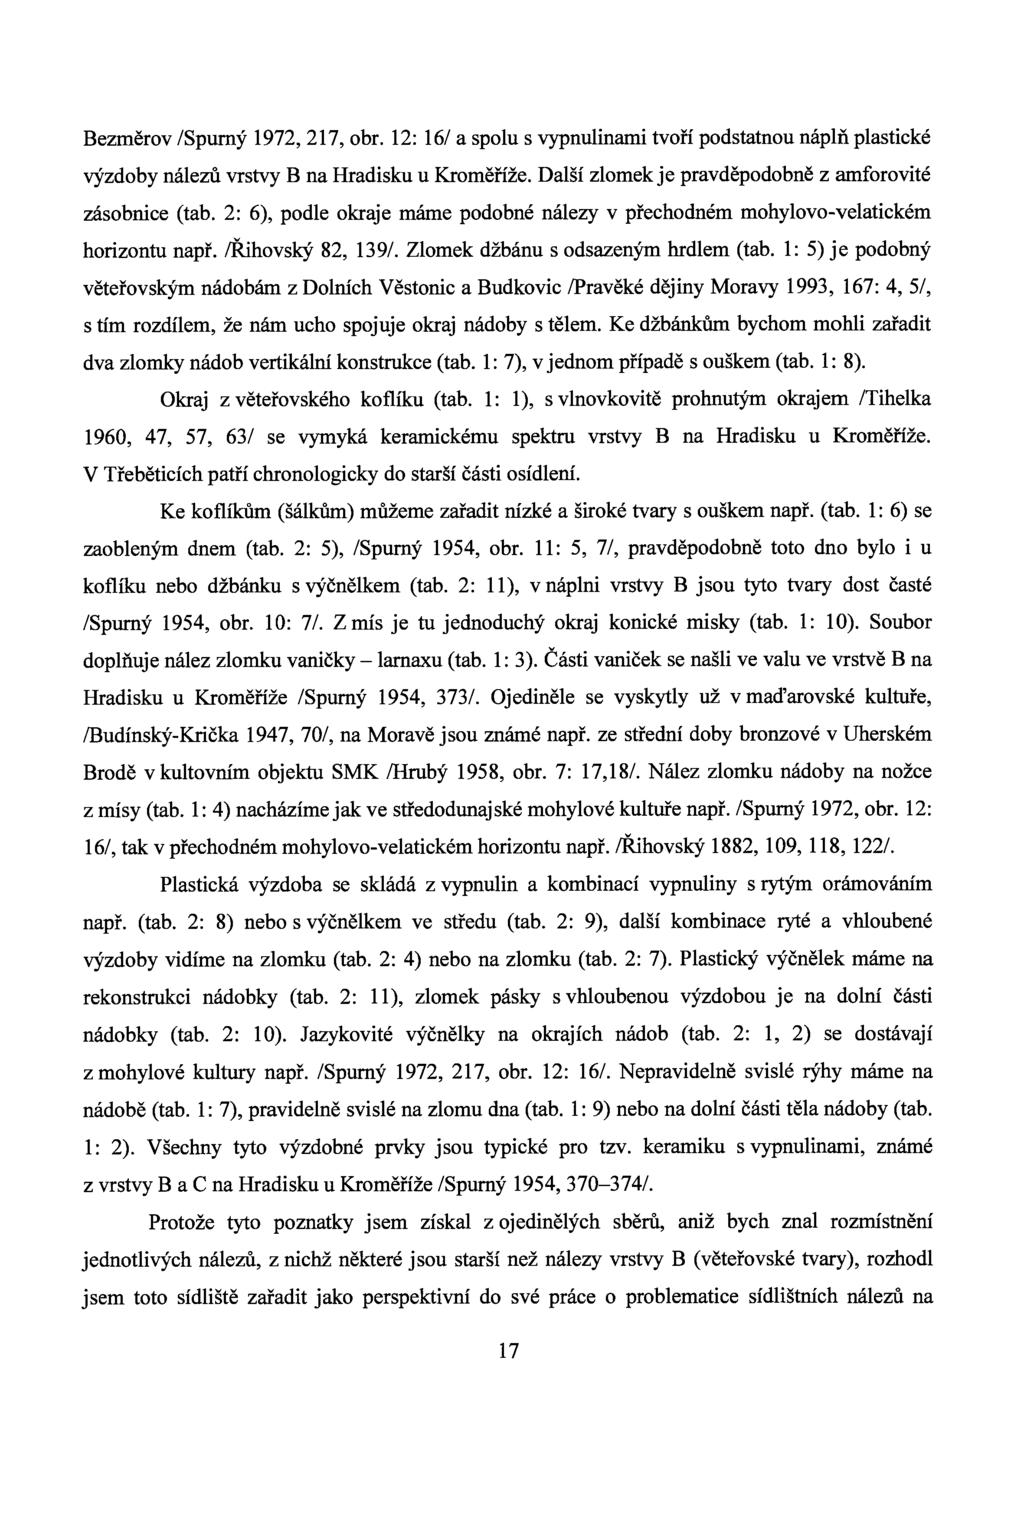 Bezměrov /Spurný 1972, 217, obr. 12: 16/ a spolu s vypnulinami tvoří podstatnou náplň plastické výzdoby nálezů vrstvy B na Hradisku u Kroměříže.